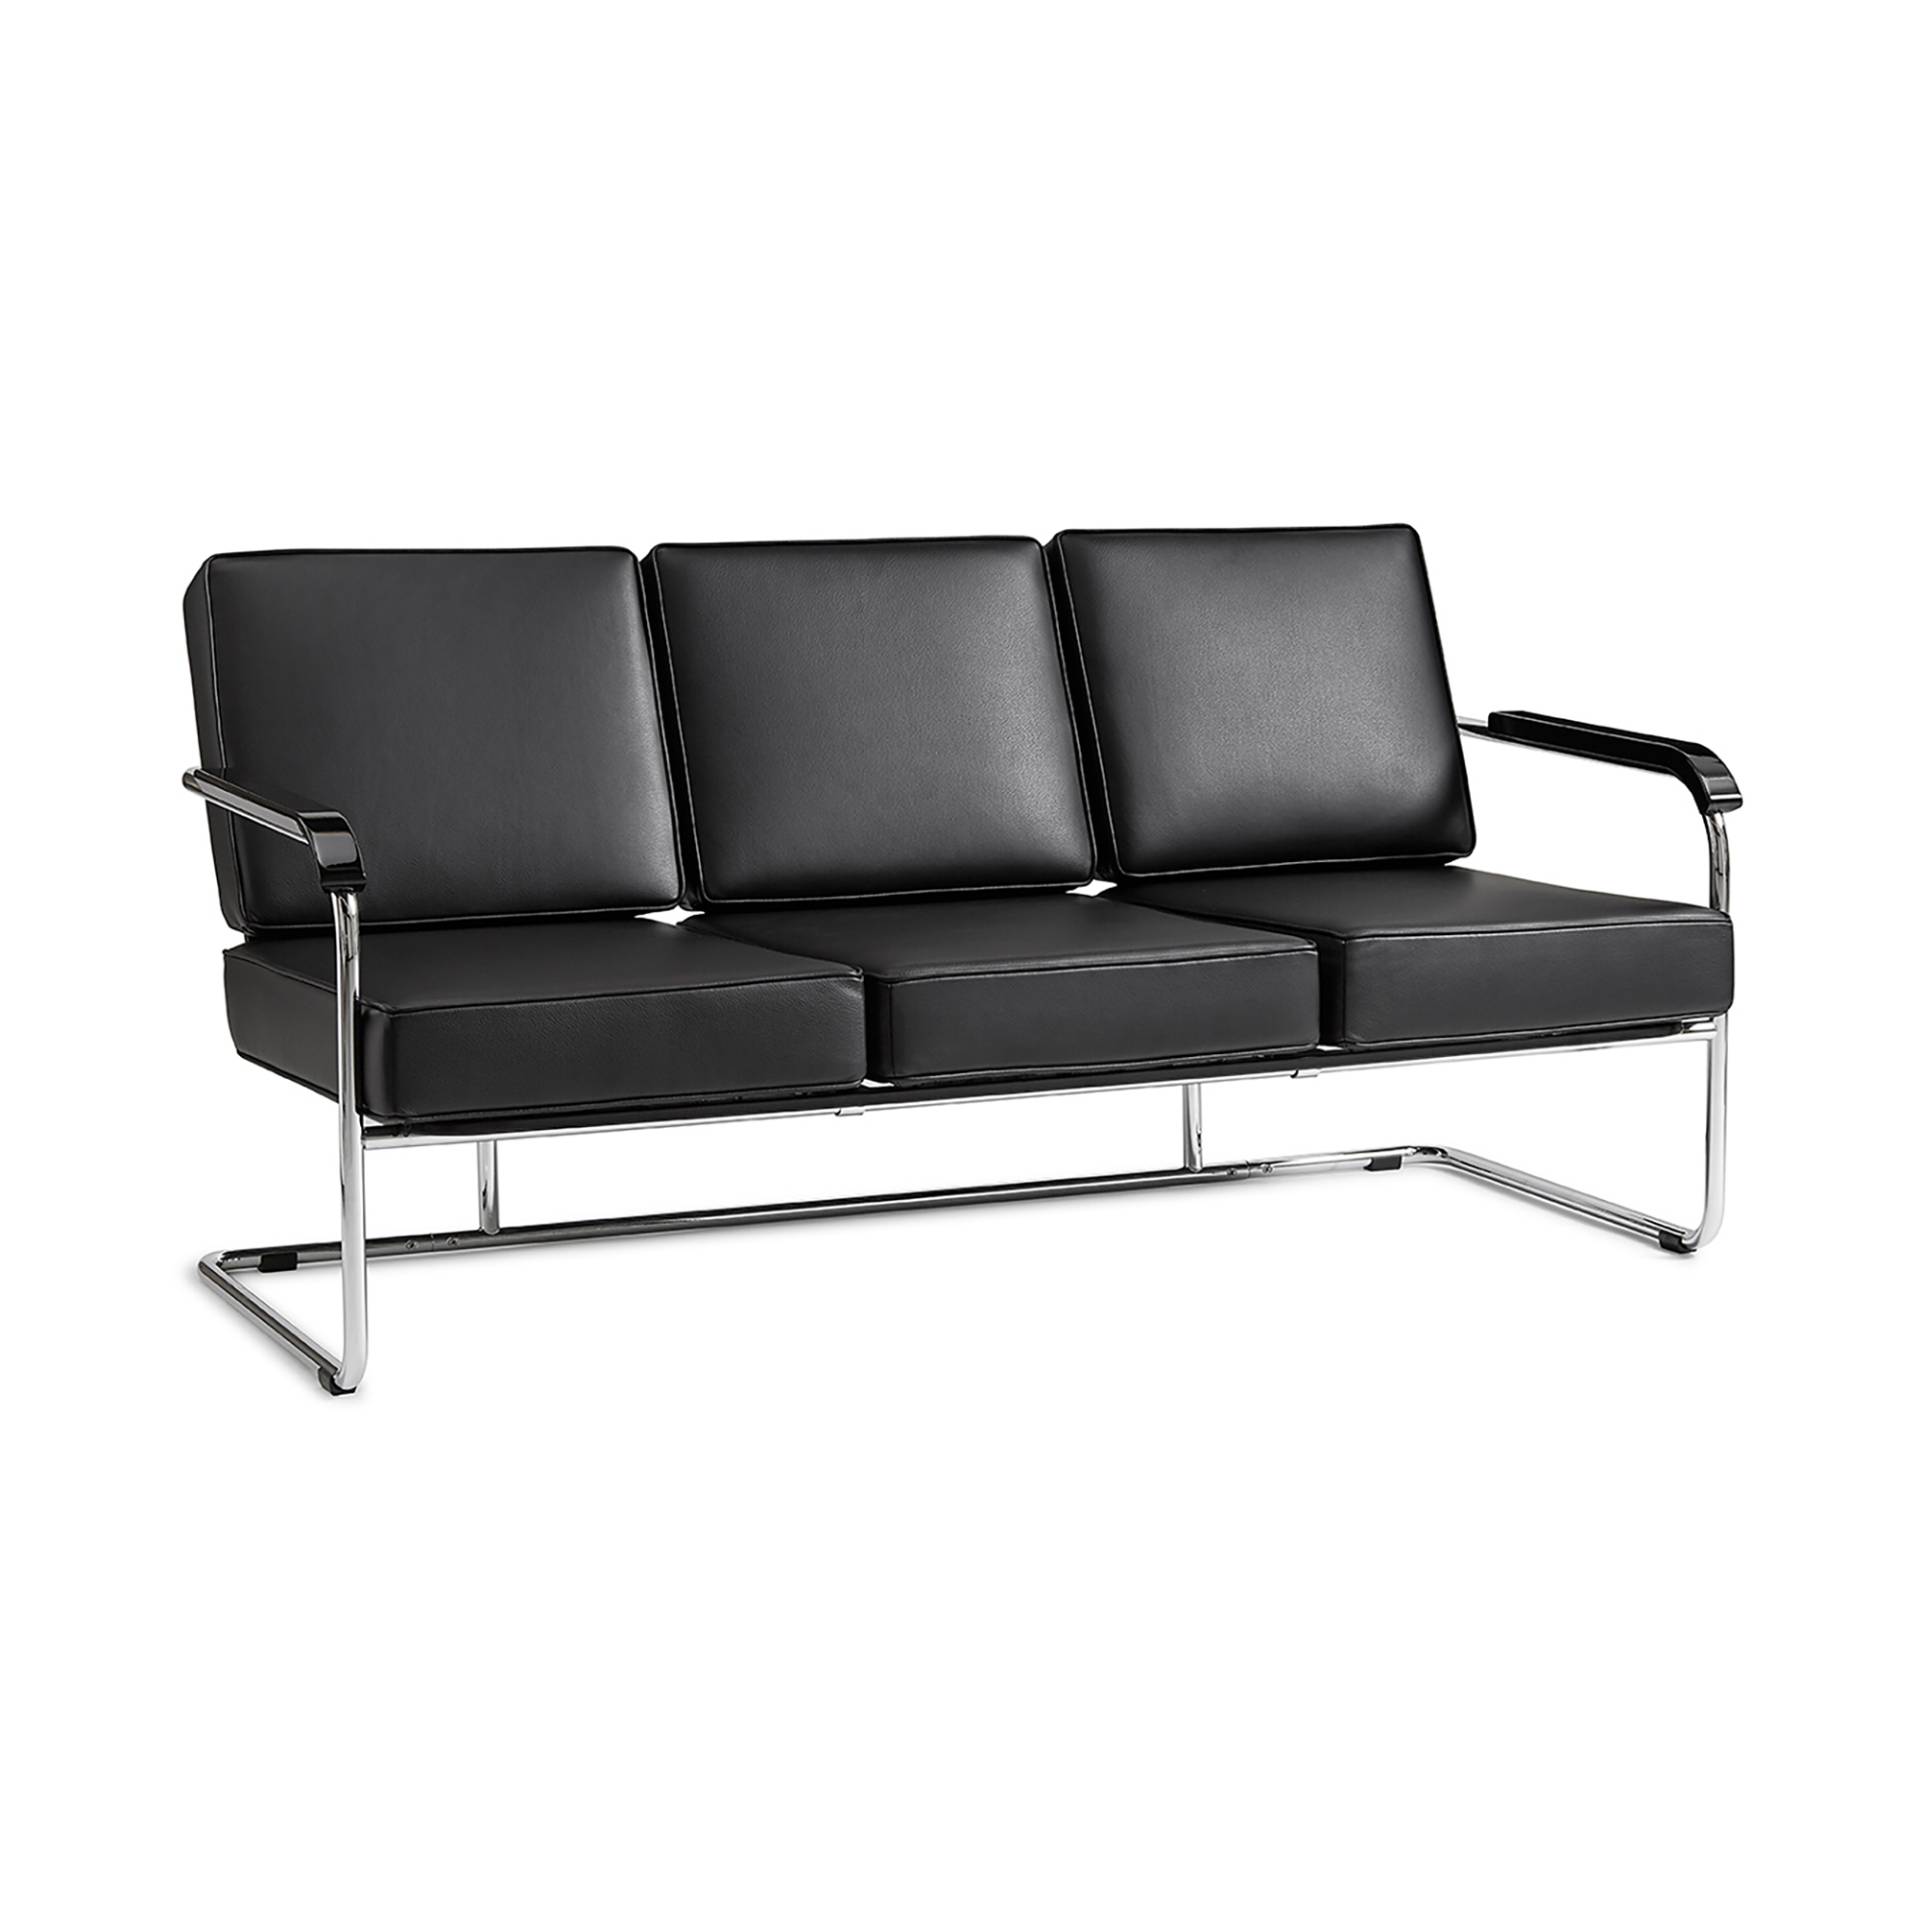 Embru - Moser Modell 1438 3-Sitzer Sofa - schwarz 0500/Montana Leder/LxBxH 169x85x82cm/Armlehnen tiefschwarz hochglanzlackiert/Gestell glanzverchromt von Embru